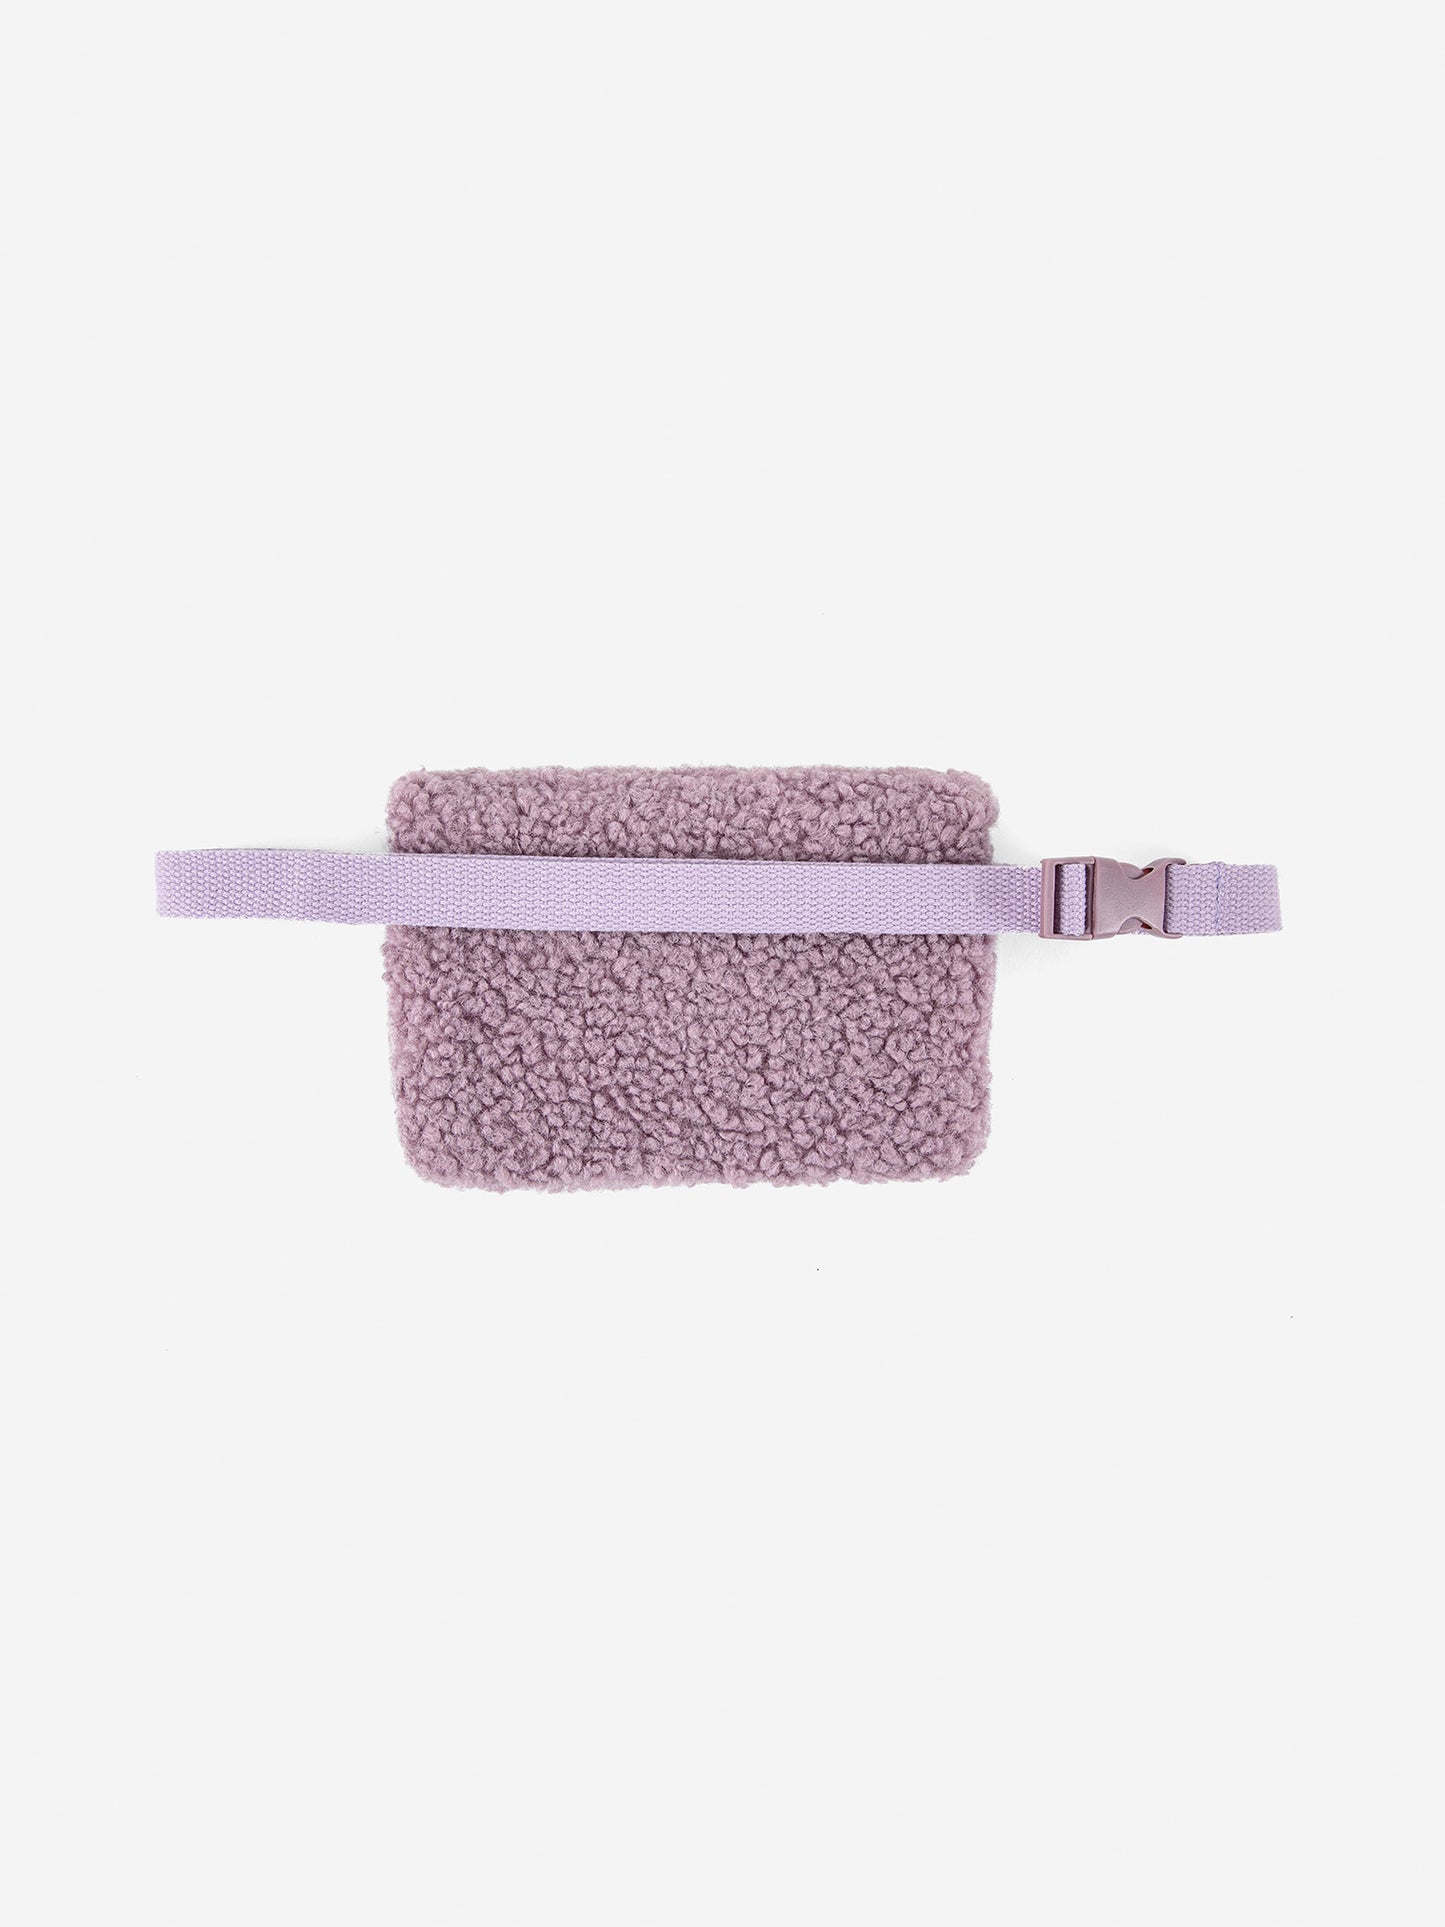 Sheepskin belt pouch